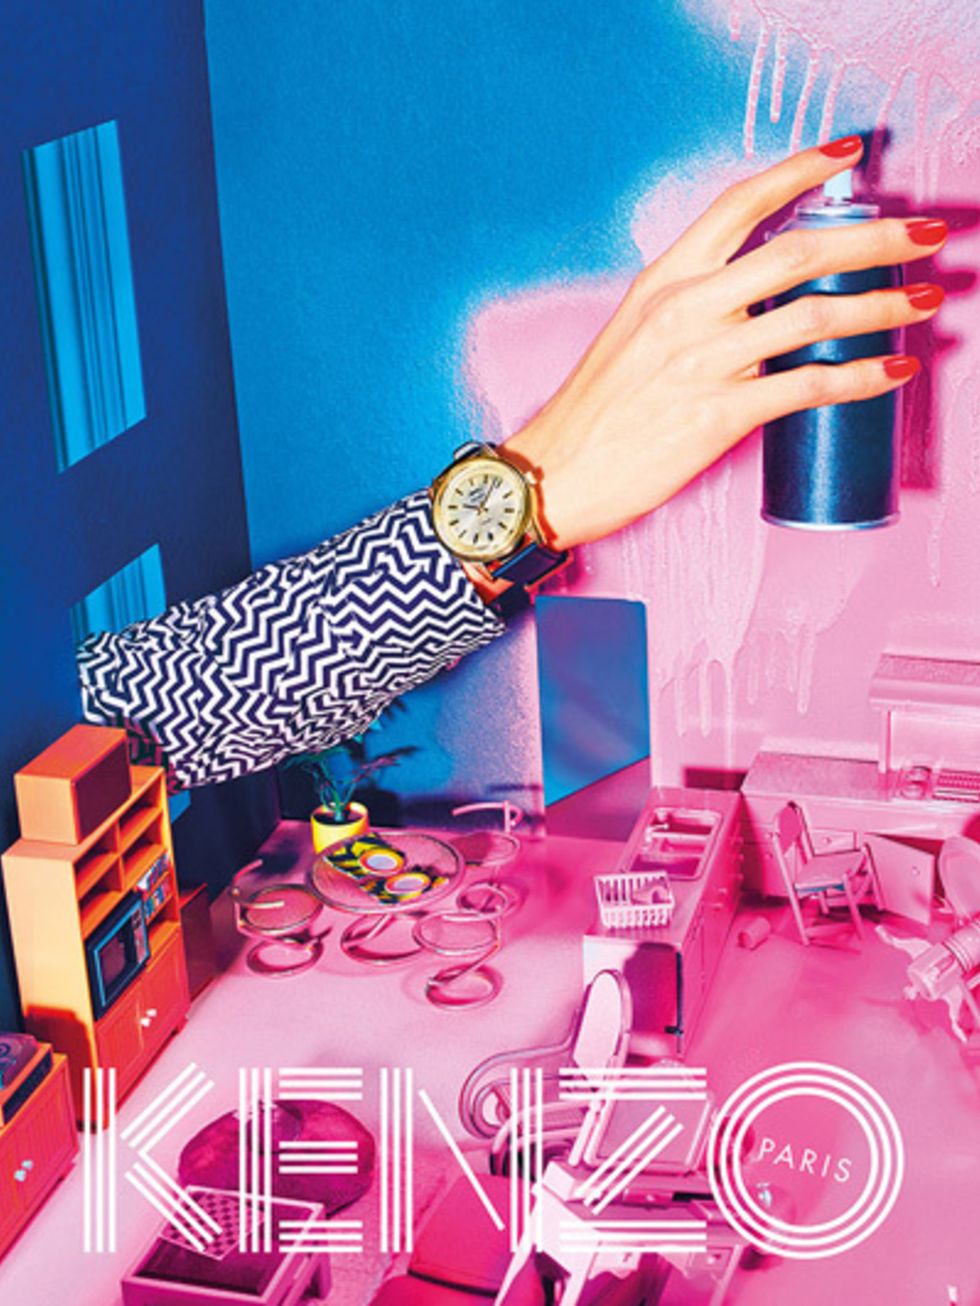 Watch, Wrist, Pink, Magenta, Analog watch, Fashion accessory, Nail, Electronics, Bottle, Watch accessory, 